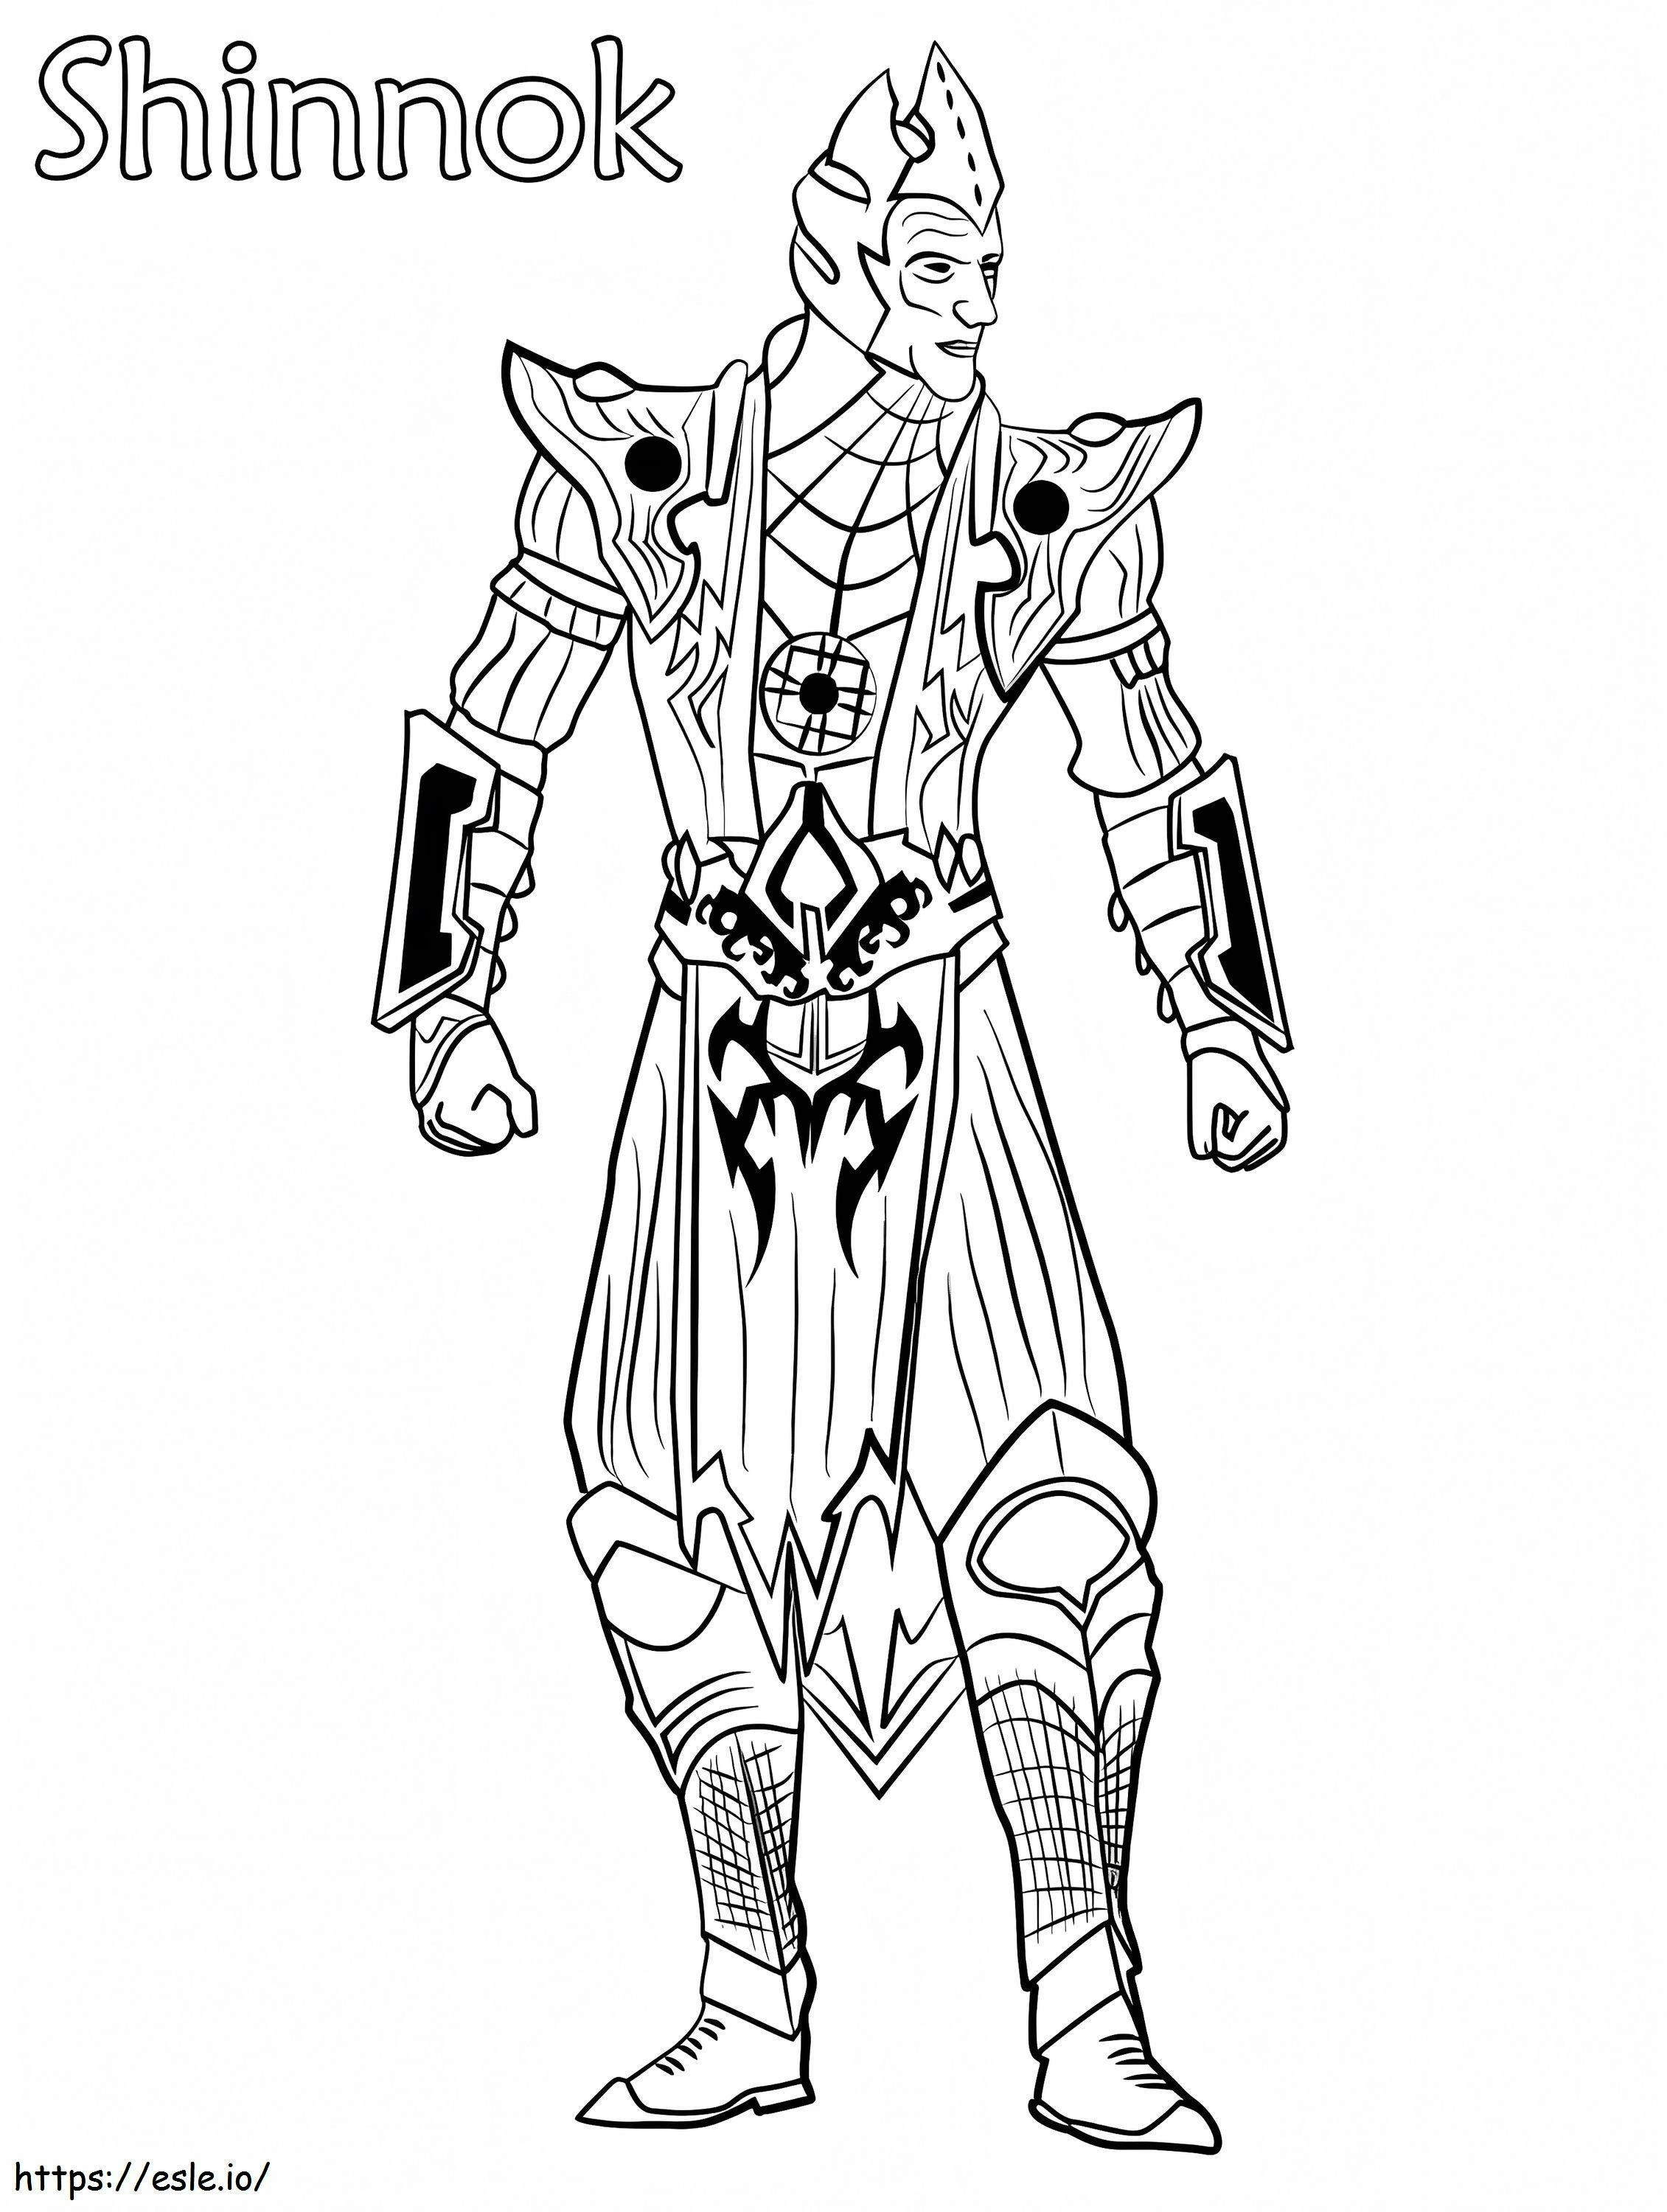 Coloriage Shinnok Mortal Kombat à imprimer dessin